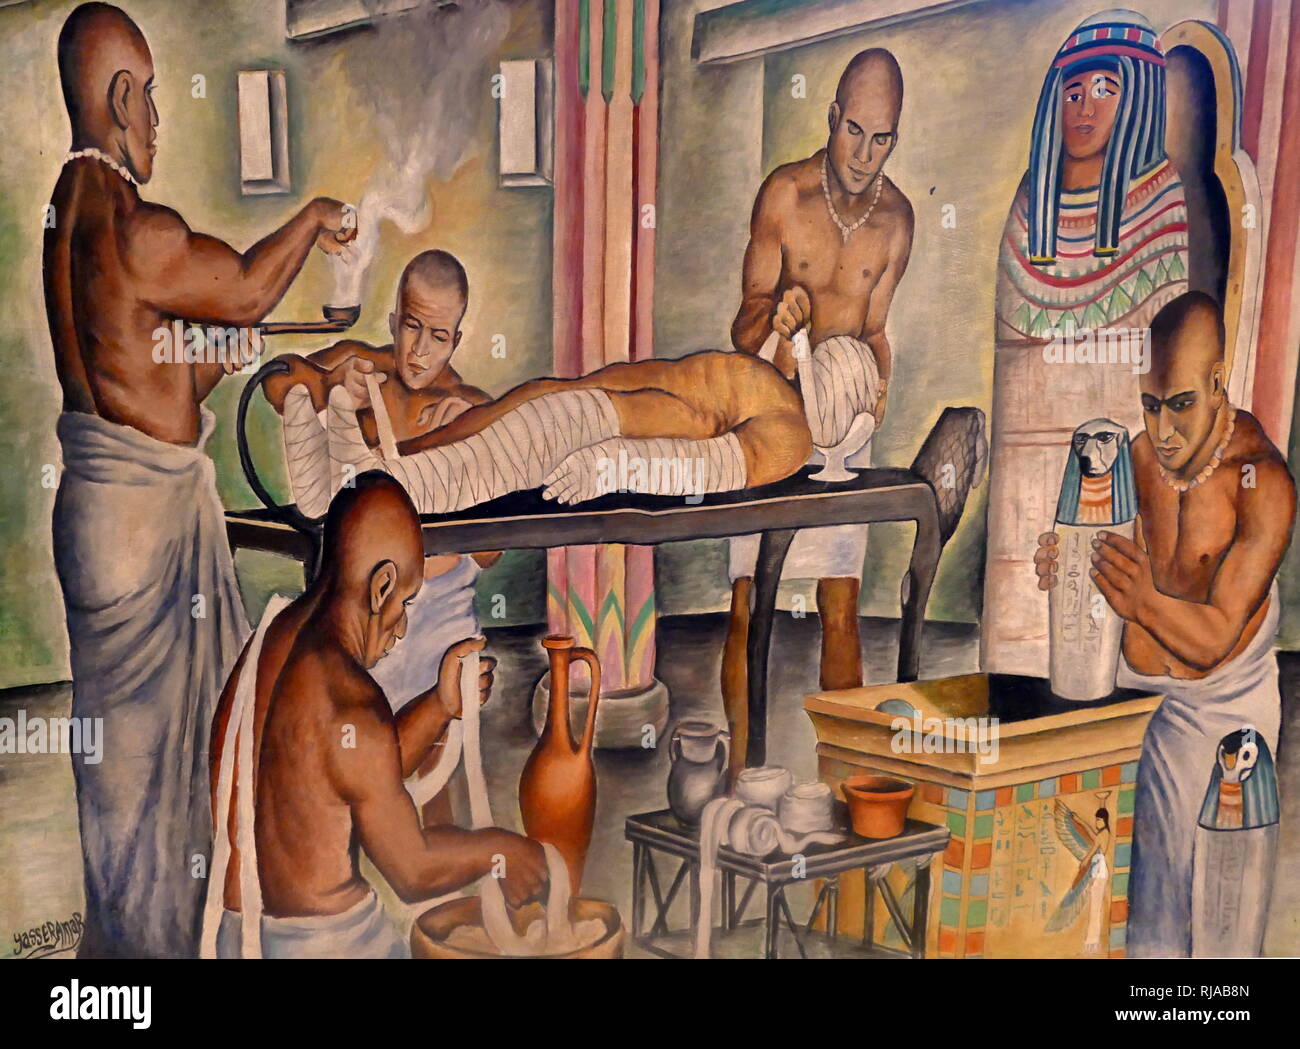 Nachgespielt Szene der Ägyptischen Mumifizierung. mumifizierung wurde ein integraler Bestandteil der Rituale für den Toten bereits ab der 2. Dynastie (ca. 2800 v. Chr.). Die Ägypter sahen die Erhaltung des Körpers nach dem Tod als einen wichtigen Schritt zu gut Leben im Jenseits. Stockfoto